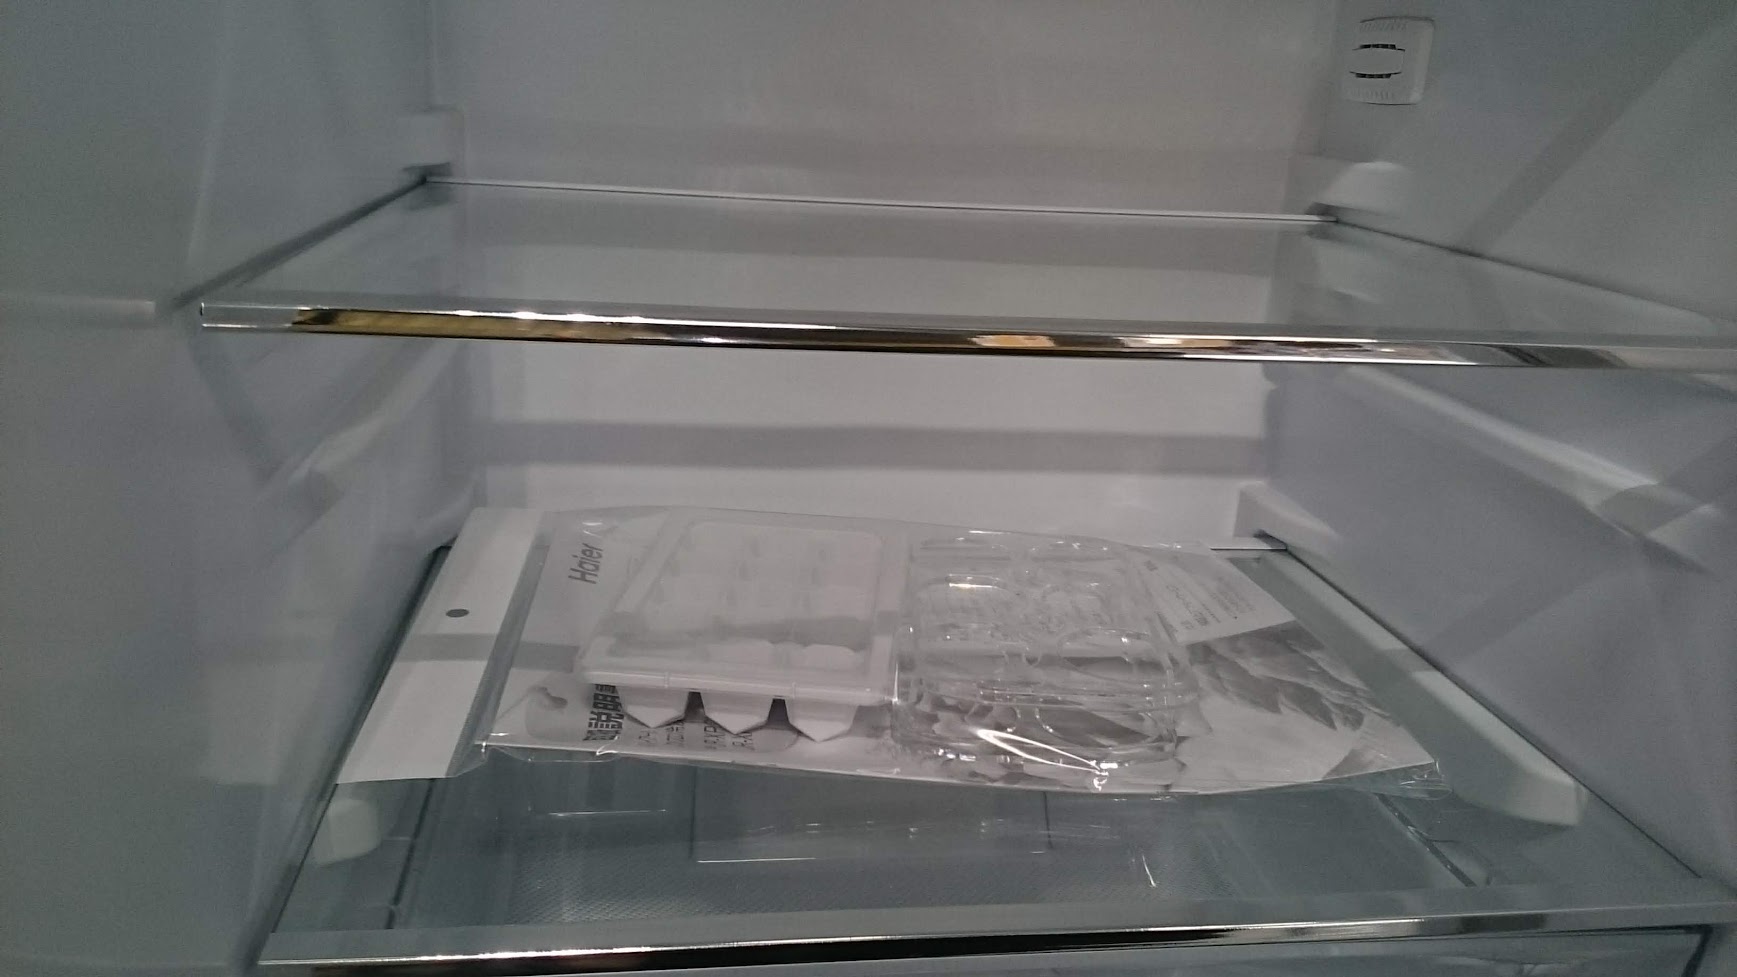 ハイアール 173L 2ドア 冷凍冷蔵庫 JR-XP2NF173F 買取いたしました|愛 ...